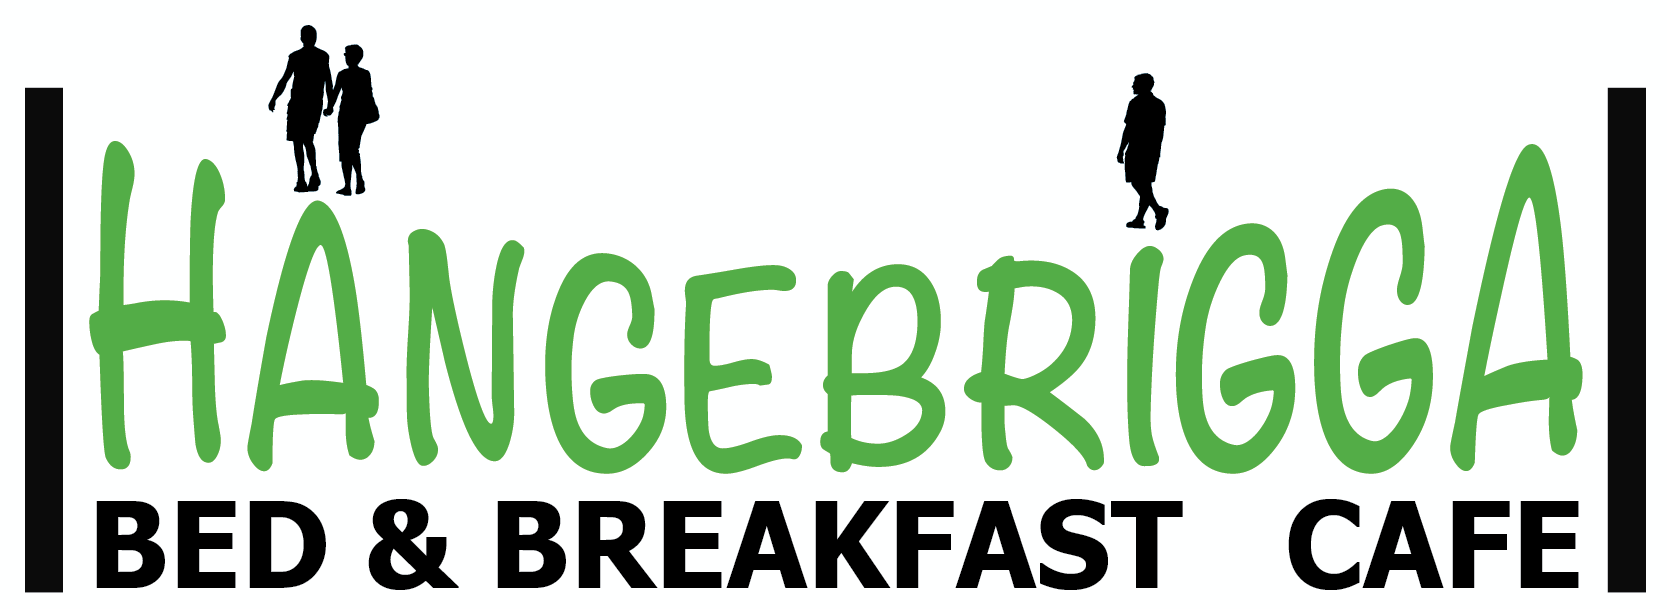 Logo Café BnB Hängebrigga